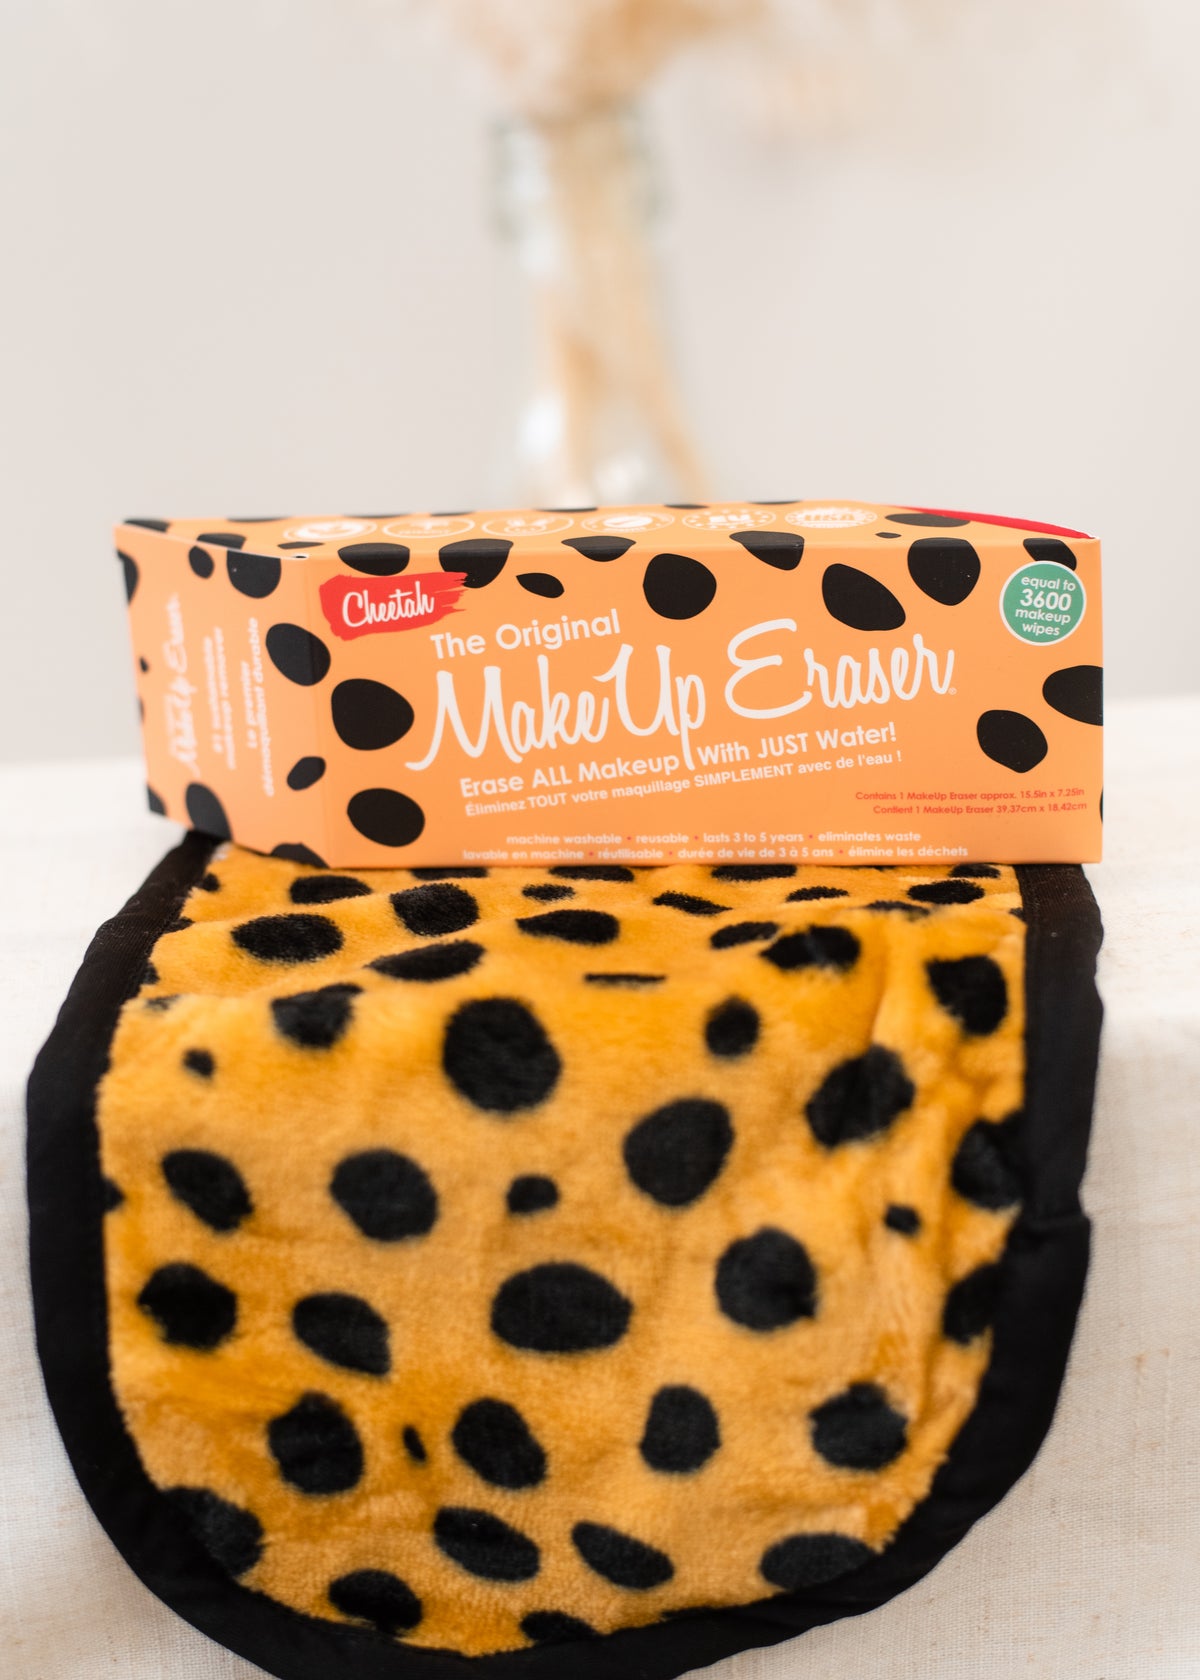 The Cheetah Print Makeup Eraser